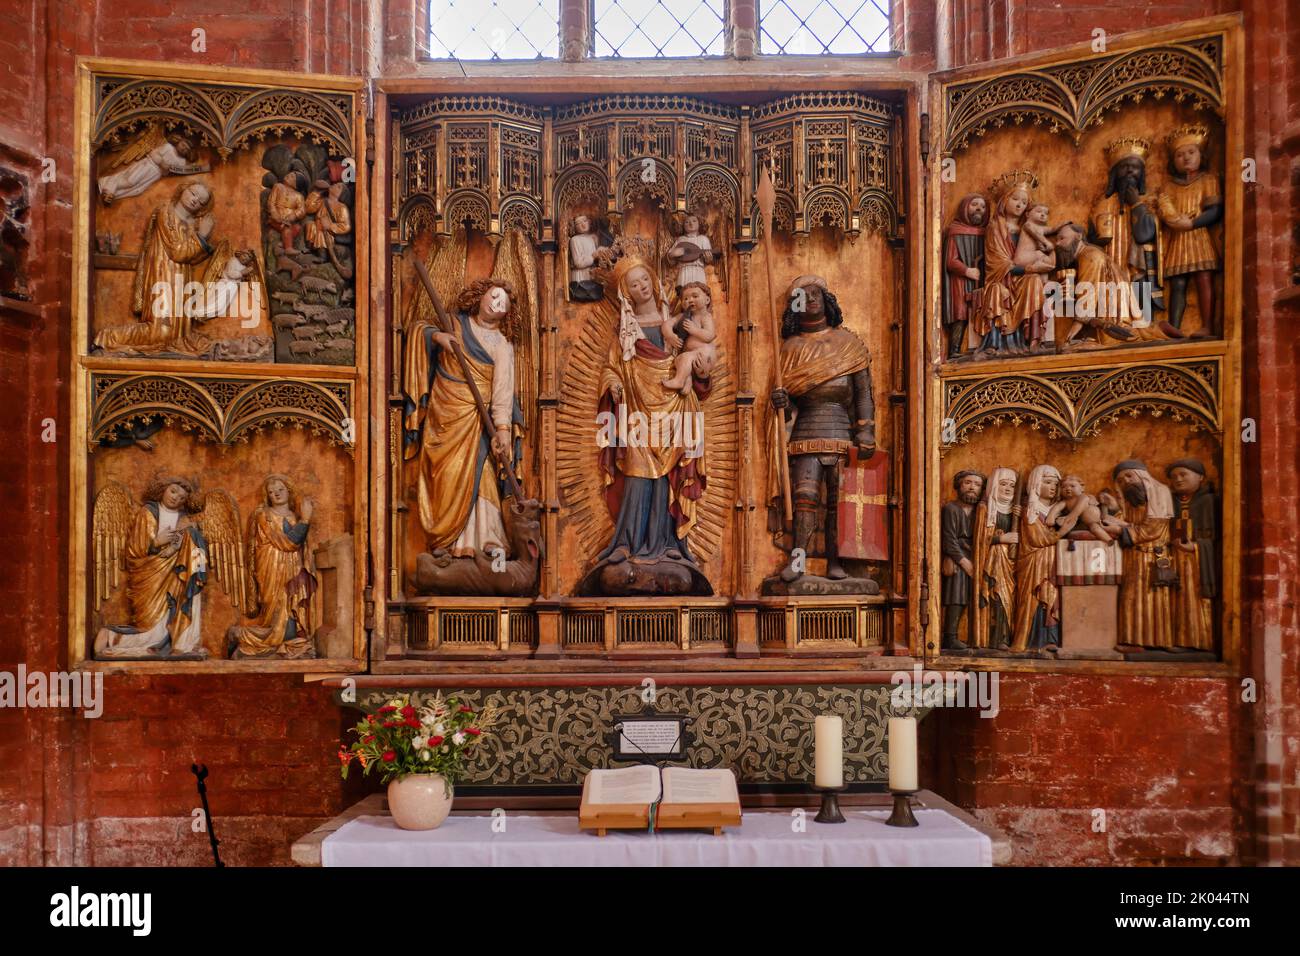 Sogenannter Krämeraltar, ein spätgotisch geschnitztes Altarbild der Lebensmittelgilde, Nikolaikirche, Wismar, Deutschland. Stockfoto